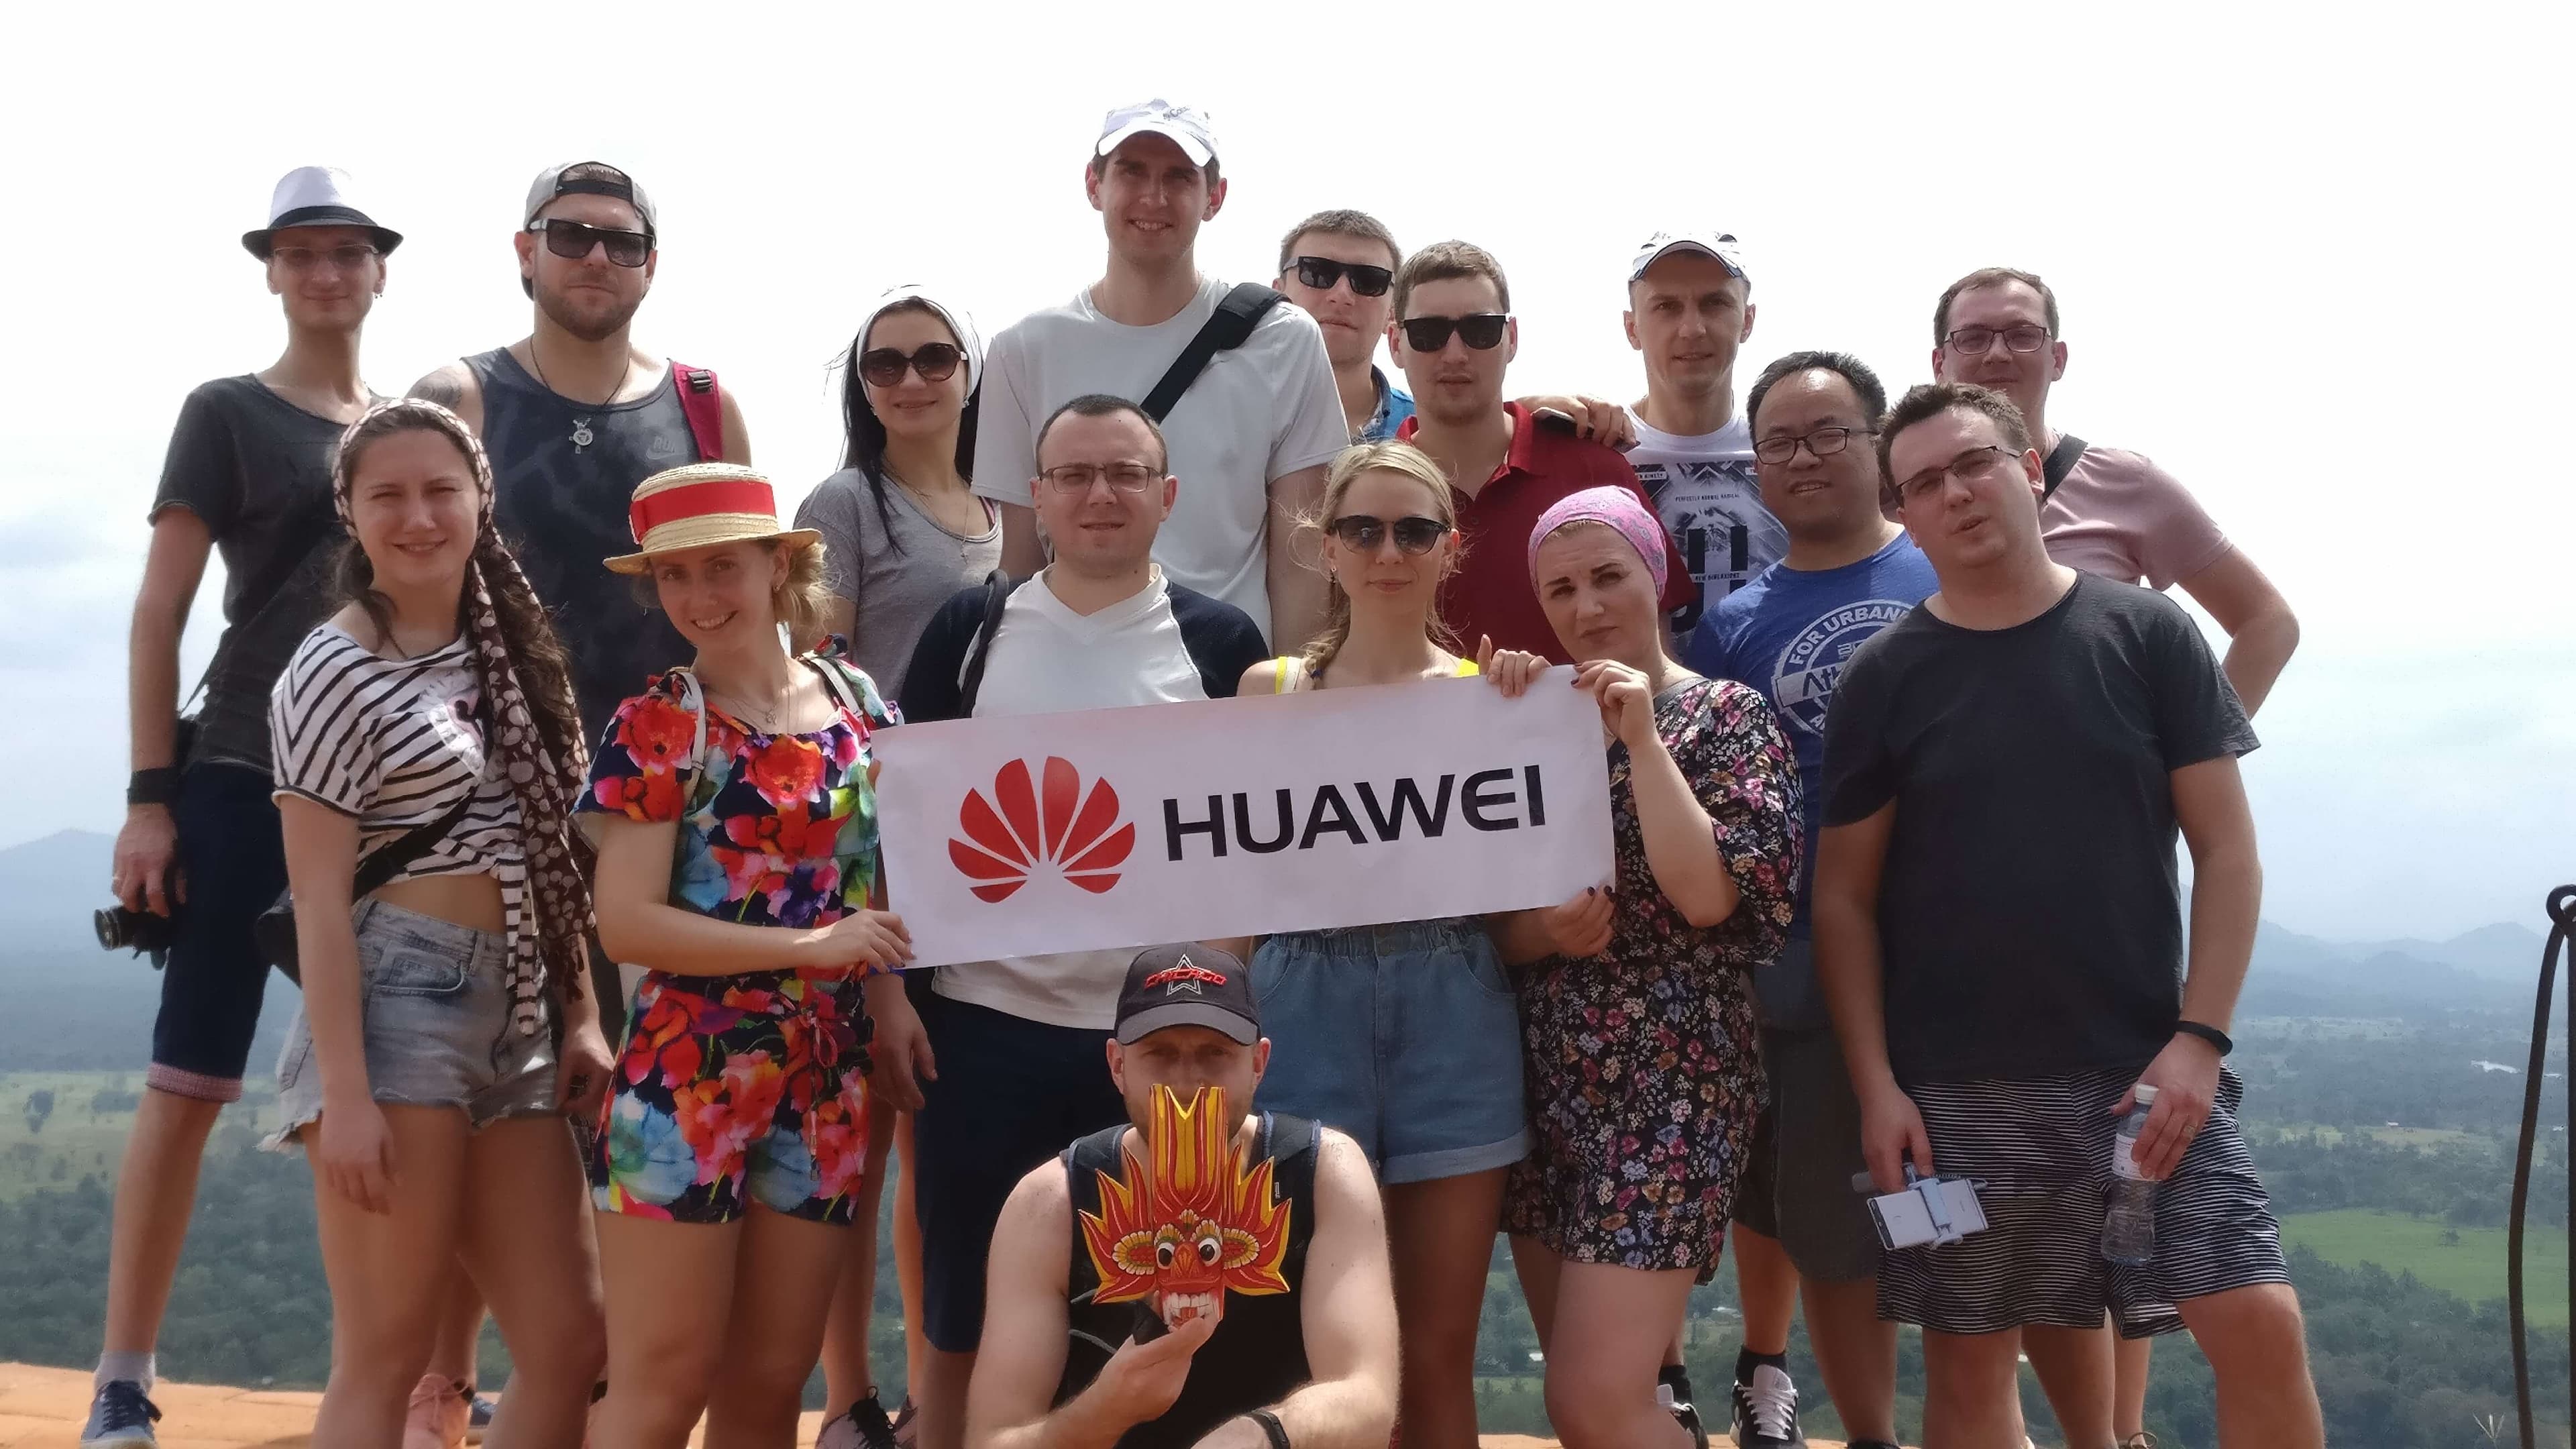 Компания Huawei спонсировала поощрительный праздник, чтобы поднять боевой дух команды.